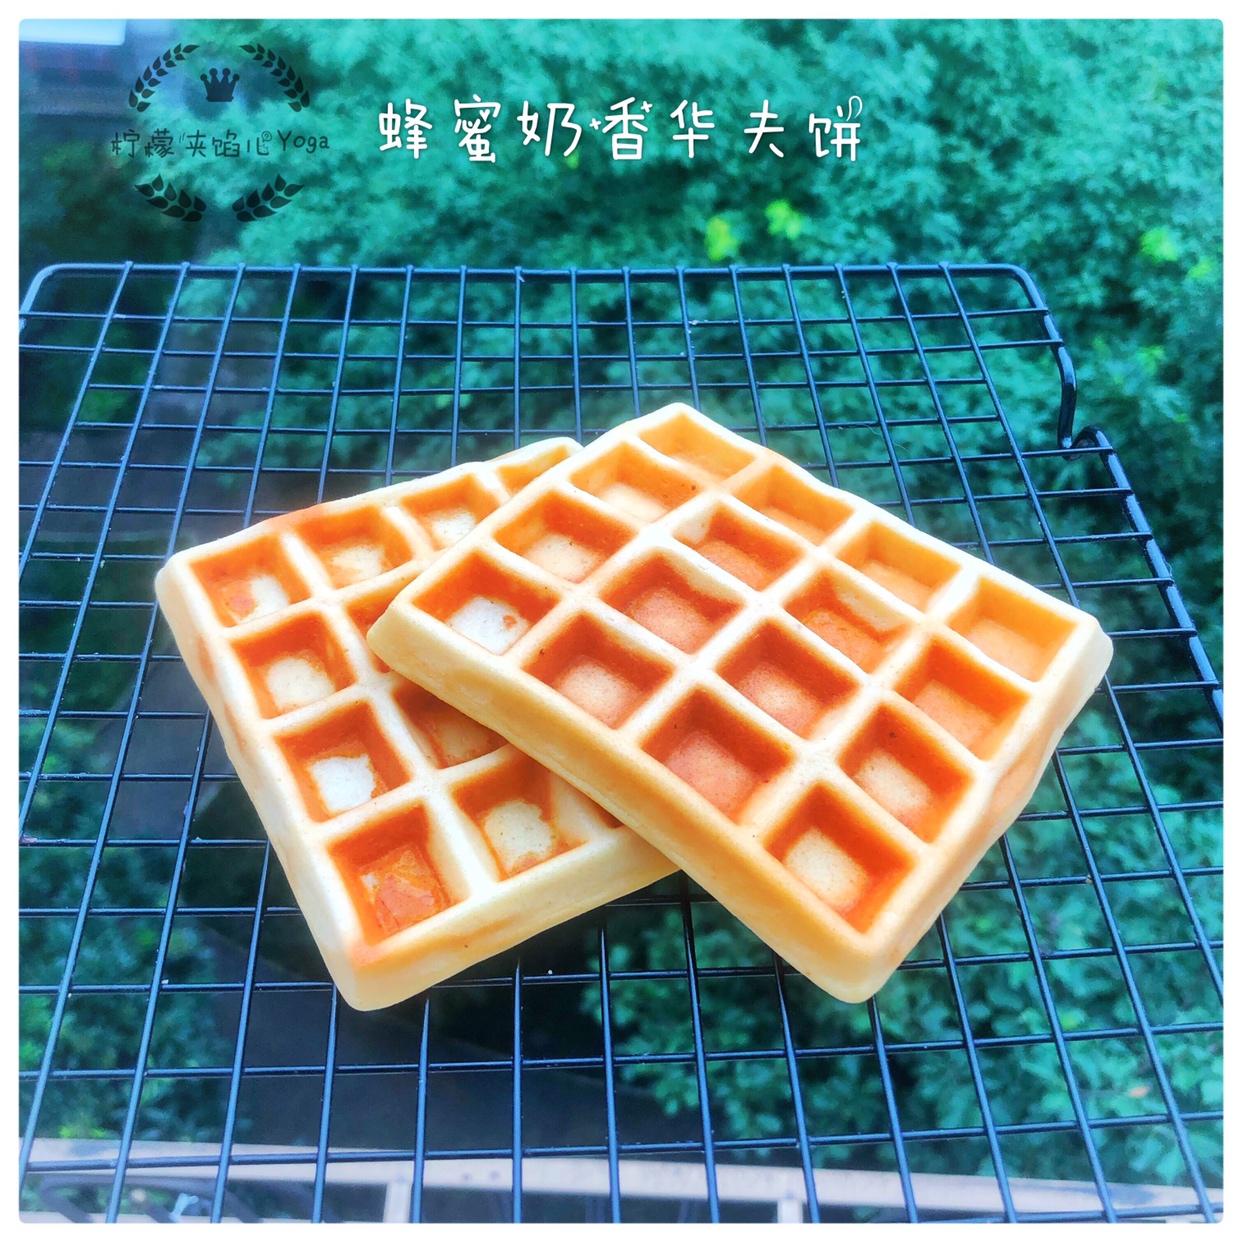 【超快手五分钟早餐系列七】蜂蜜奶香华夫饼的做法 步骤6